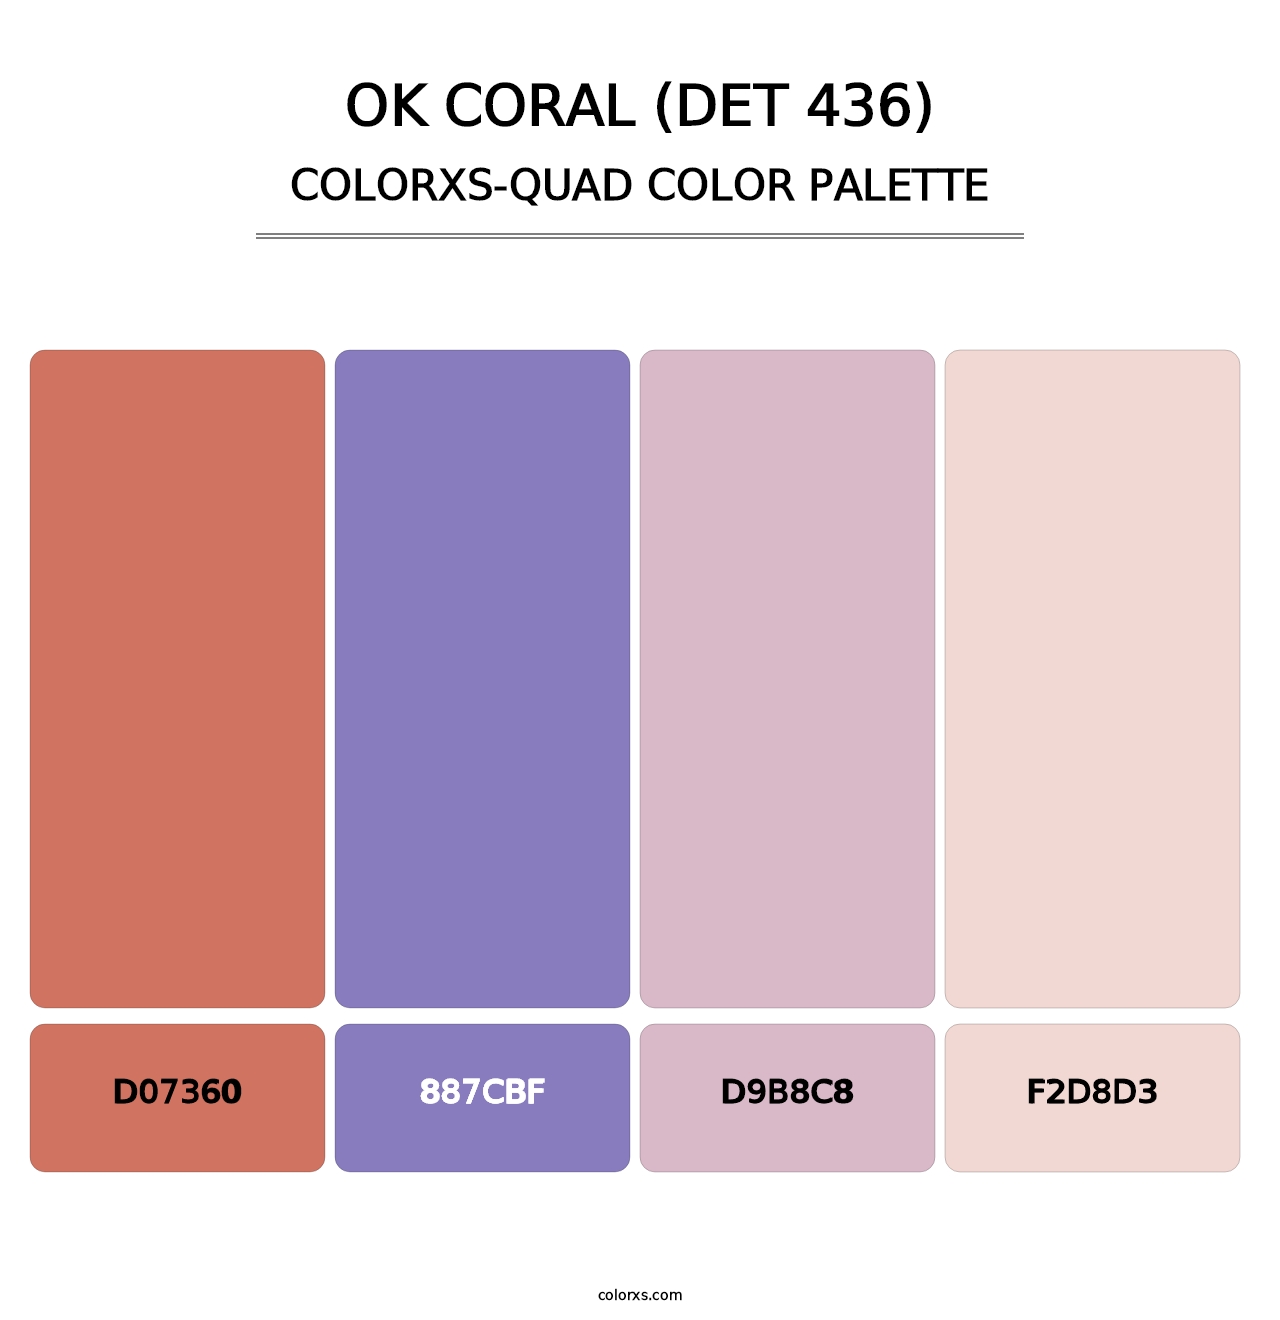 OK Coral (DET 436) - Colorxs Quad Palette